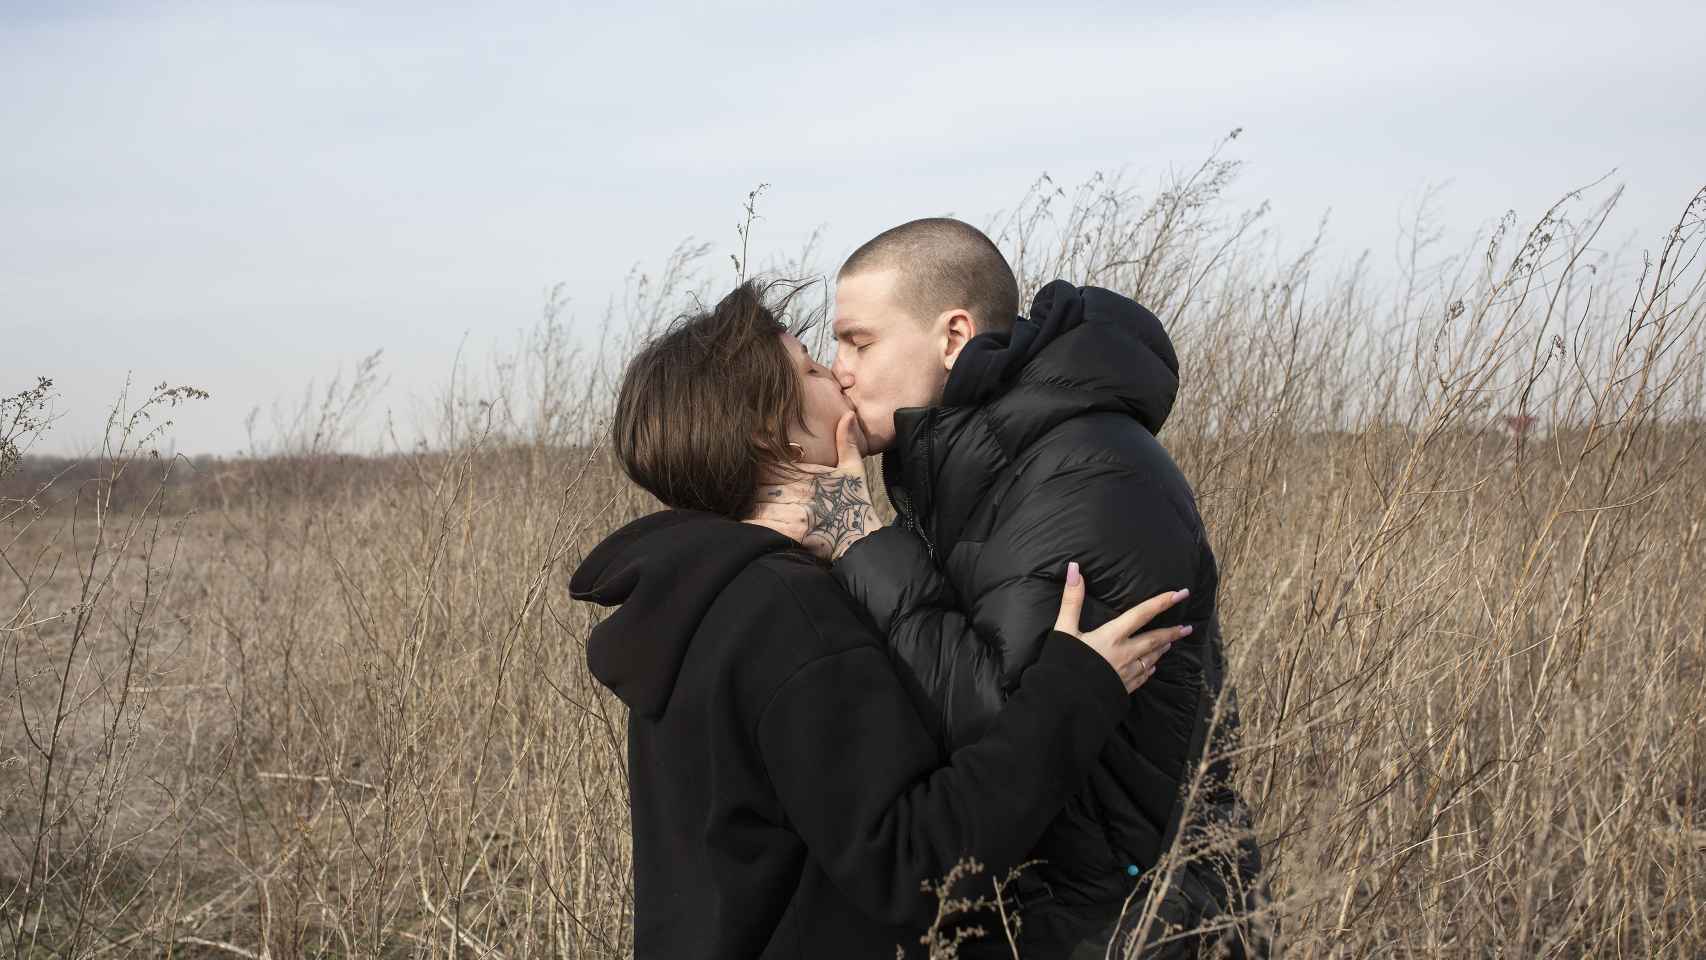 Taras, de 21 años, besa a su novia Asya, de 17, al cruzar la frontera entre Ucrania y Moldavia.